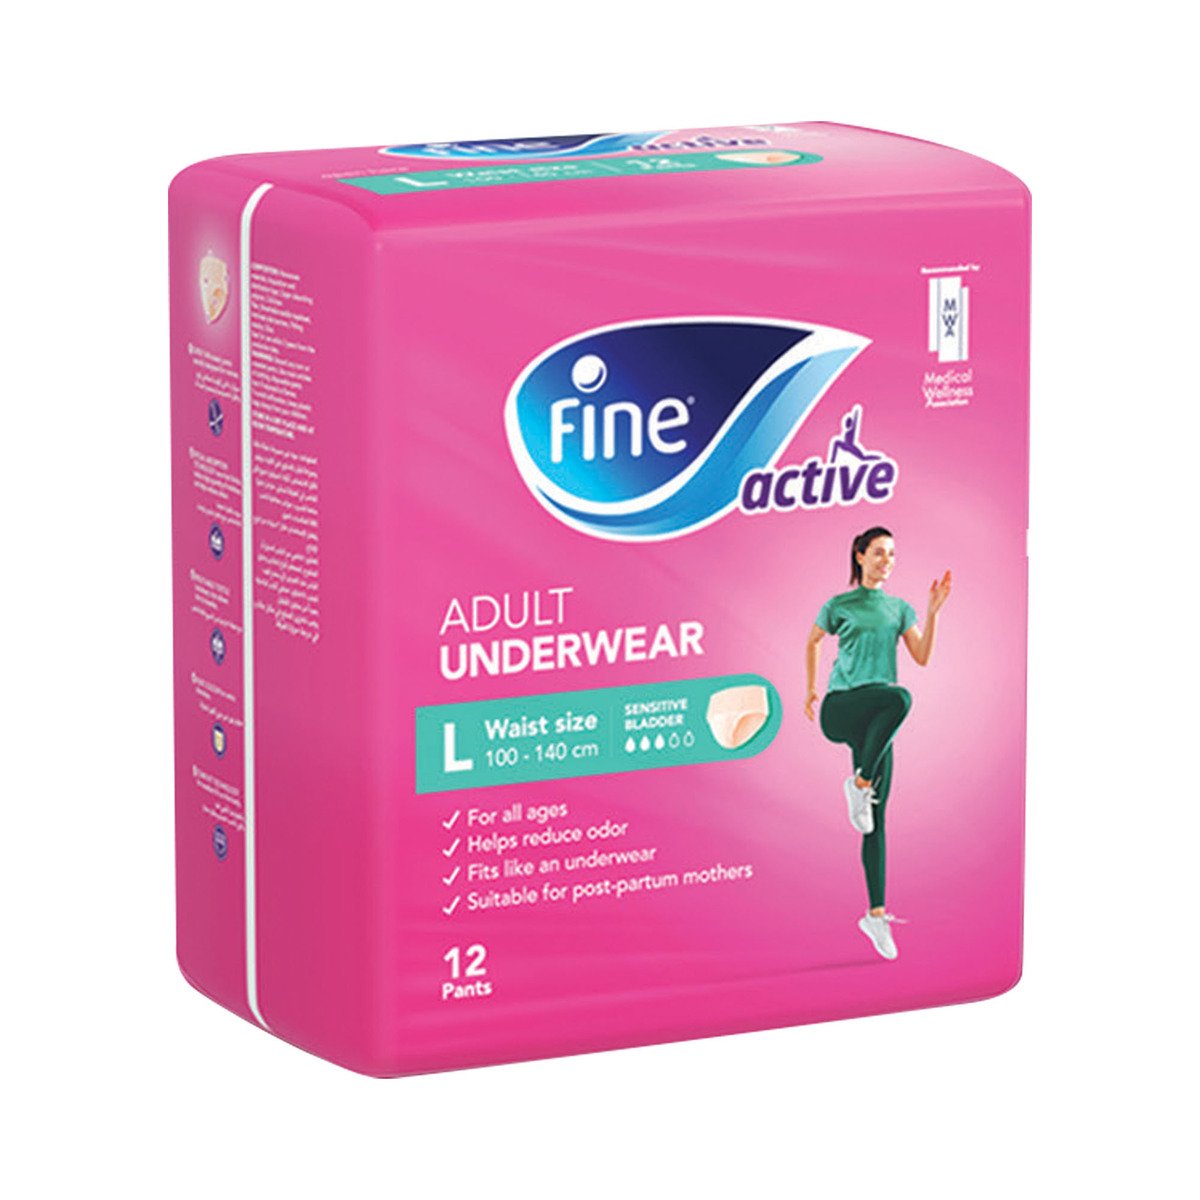 Fine Active Adult Underwear For Women Size Large Waste Size 100-140cm 12 pcs